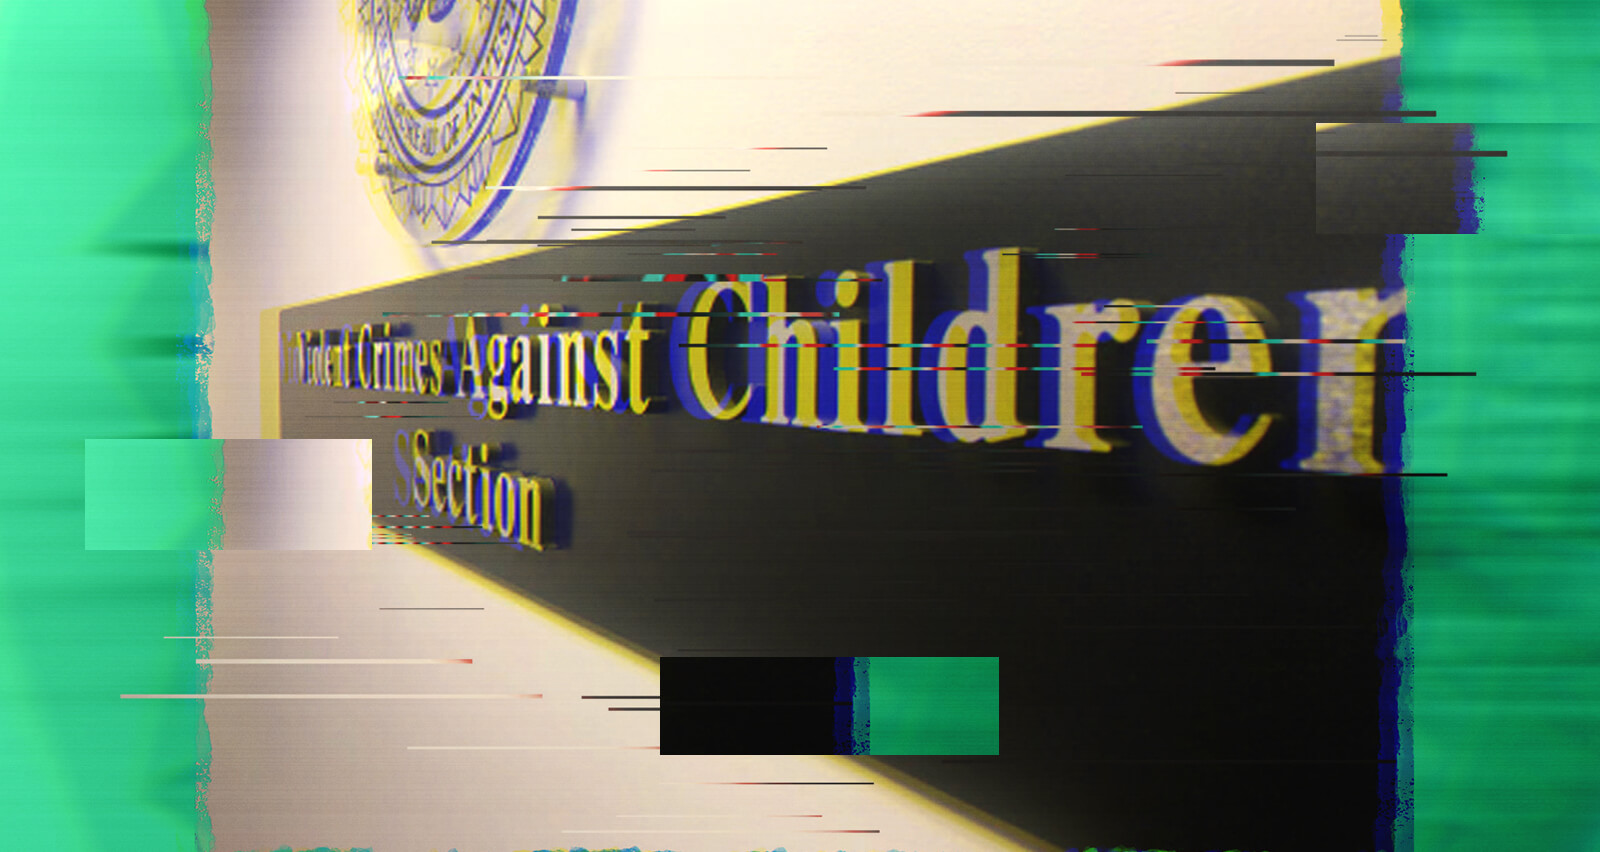 Violent Crimes Against Children Section sign.